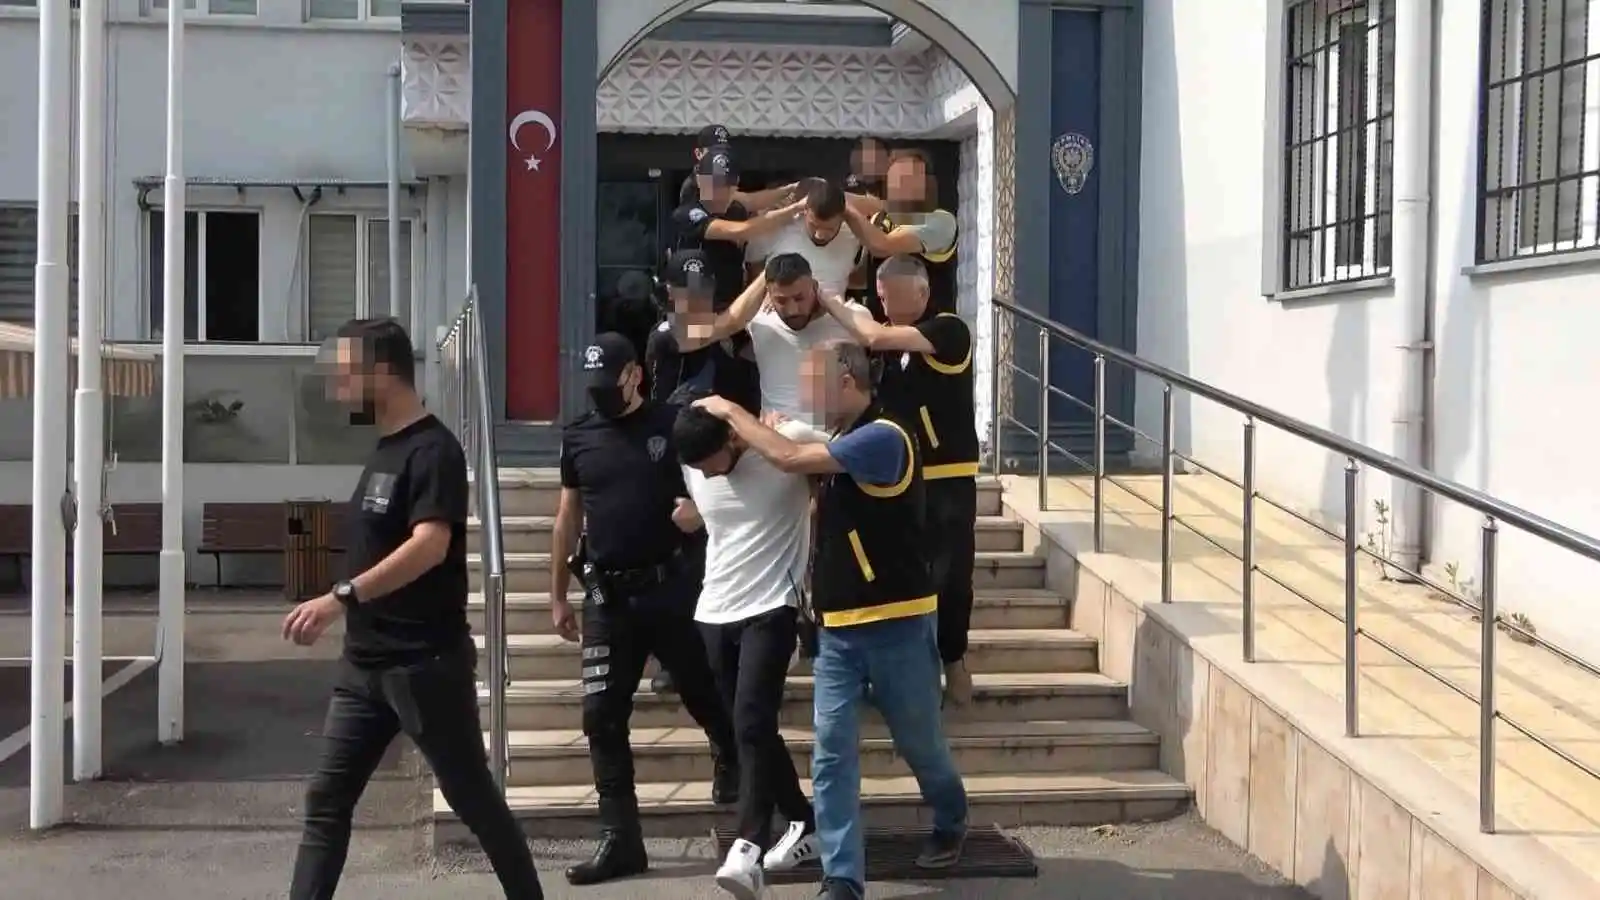 Bursa’da cinayet işleyip İzmir’e kaçan şüphelilerden 3’ü tutuklandı
